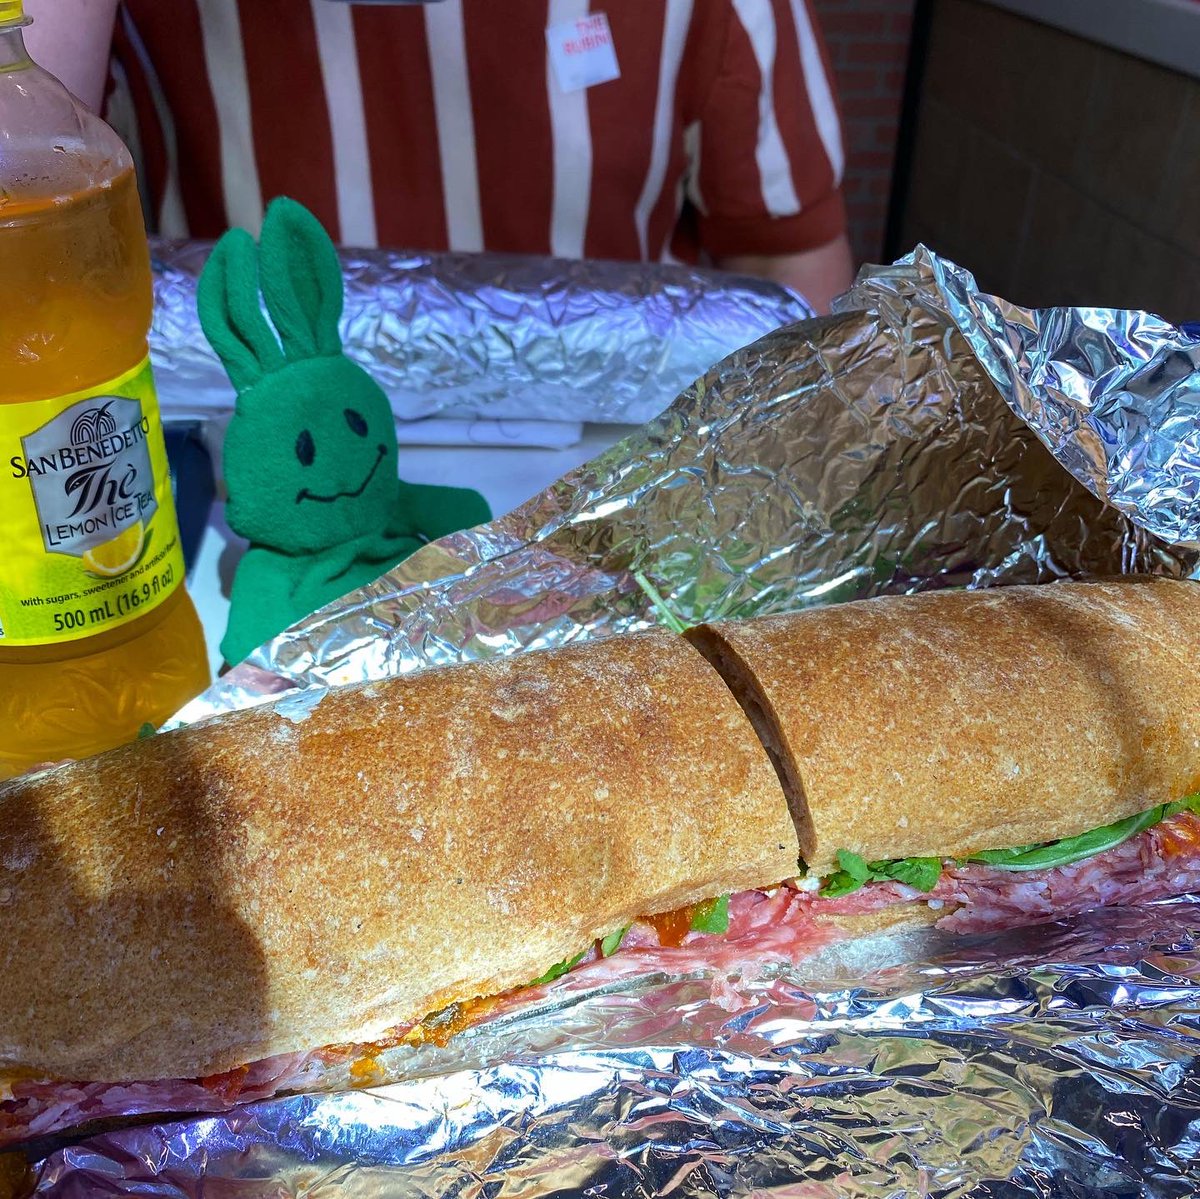 This is a lot of sandwich
.
.
.
#pisilloitalianpanini #palermo #sopressata #mozzarella #hotpeppers #arugula #sandwich #nyceats